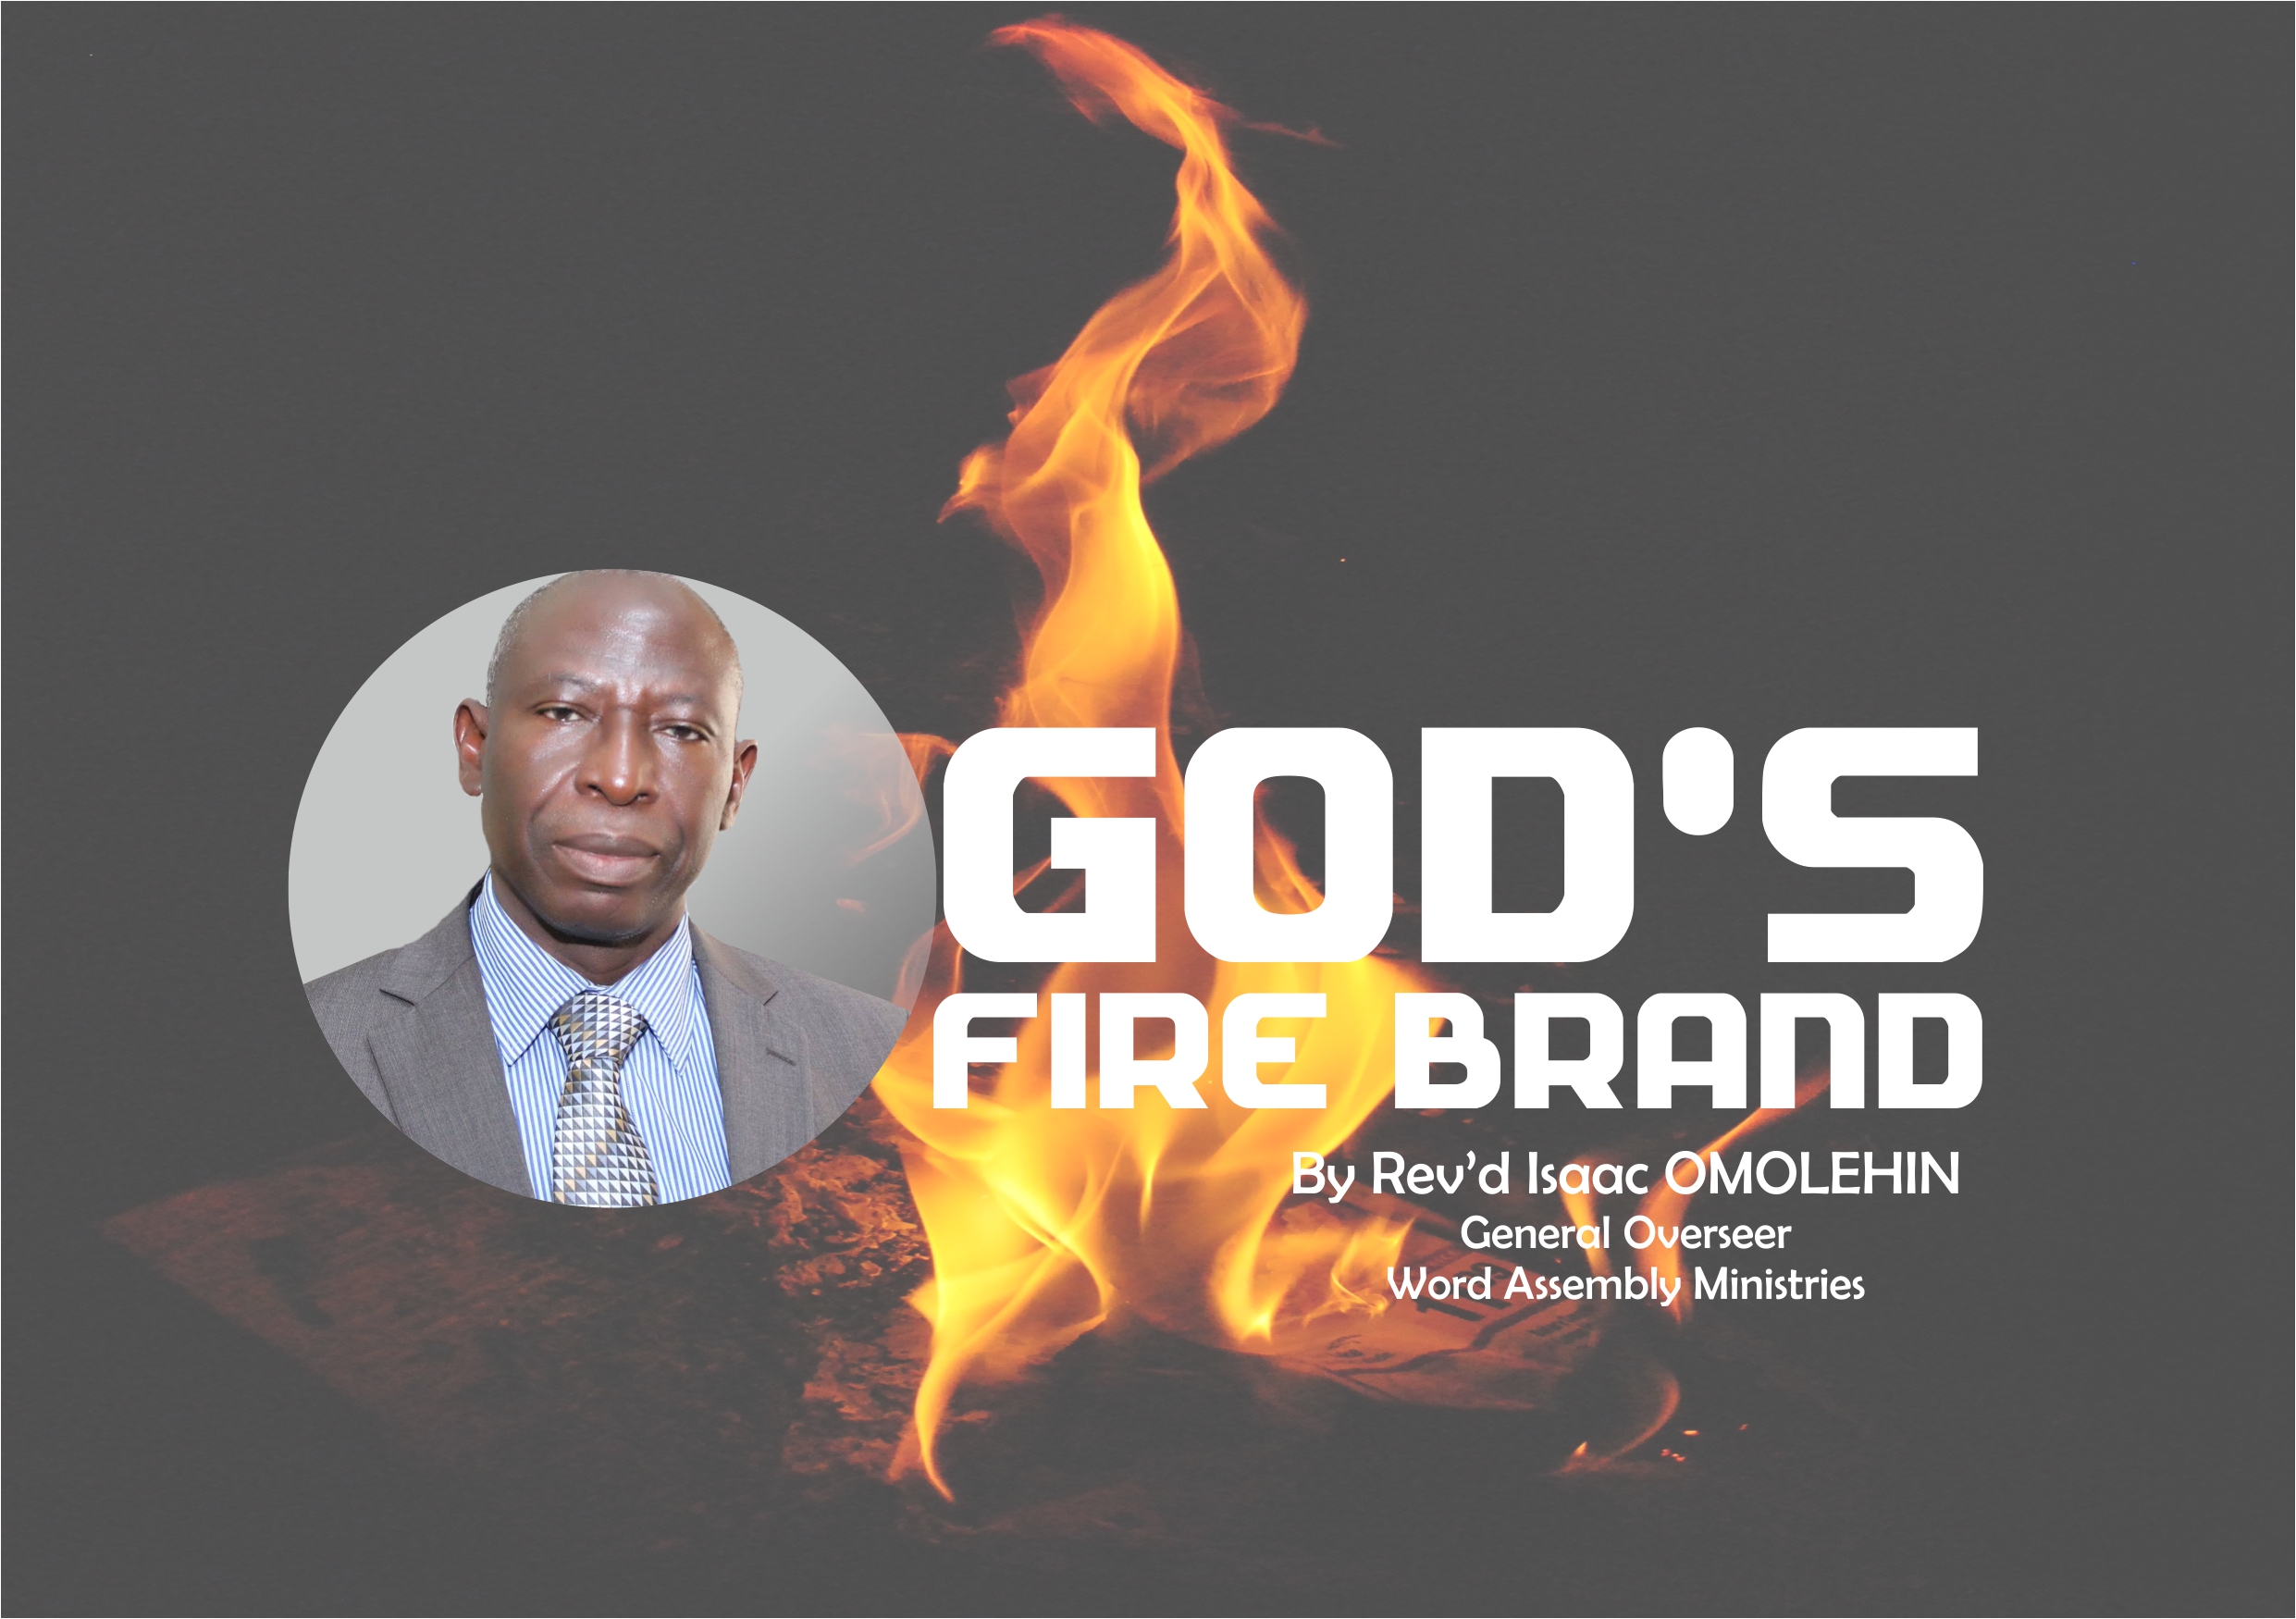 God’s Fire Brand, by Rev’d Isaac Omolehin